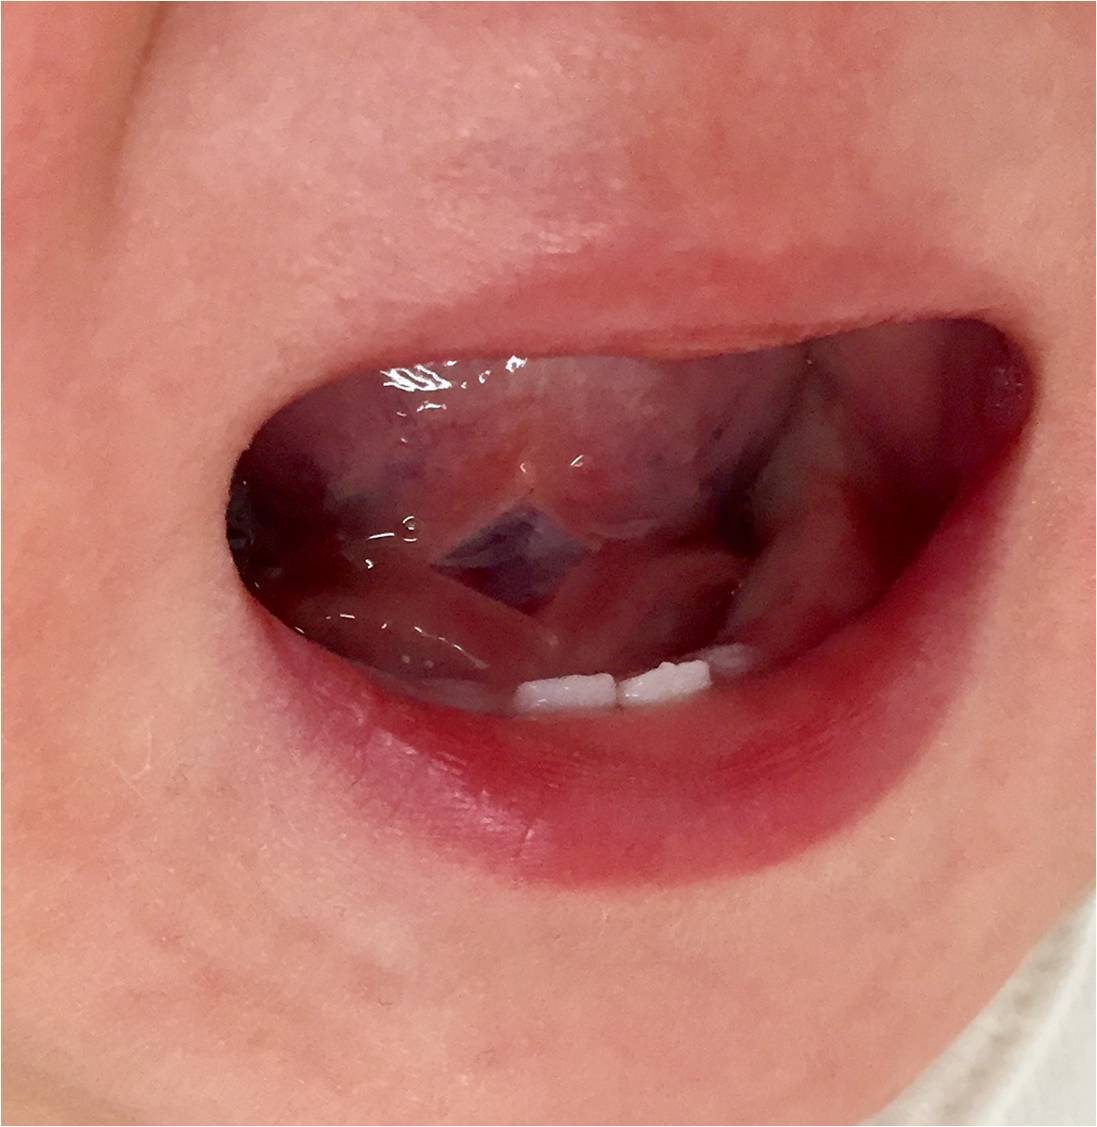 舌小帯短縮症に対する私の診断基準と手術方針 お子さんの舌小帯短縮症でお悩みの方へ